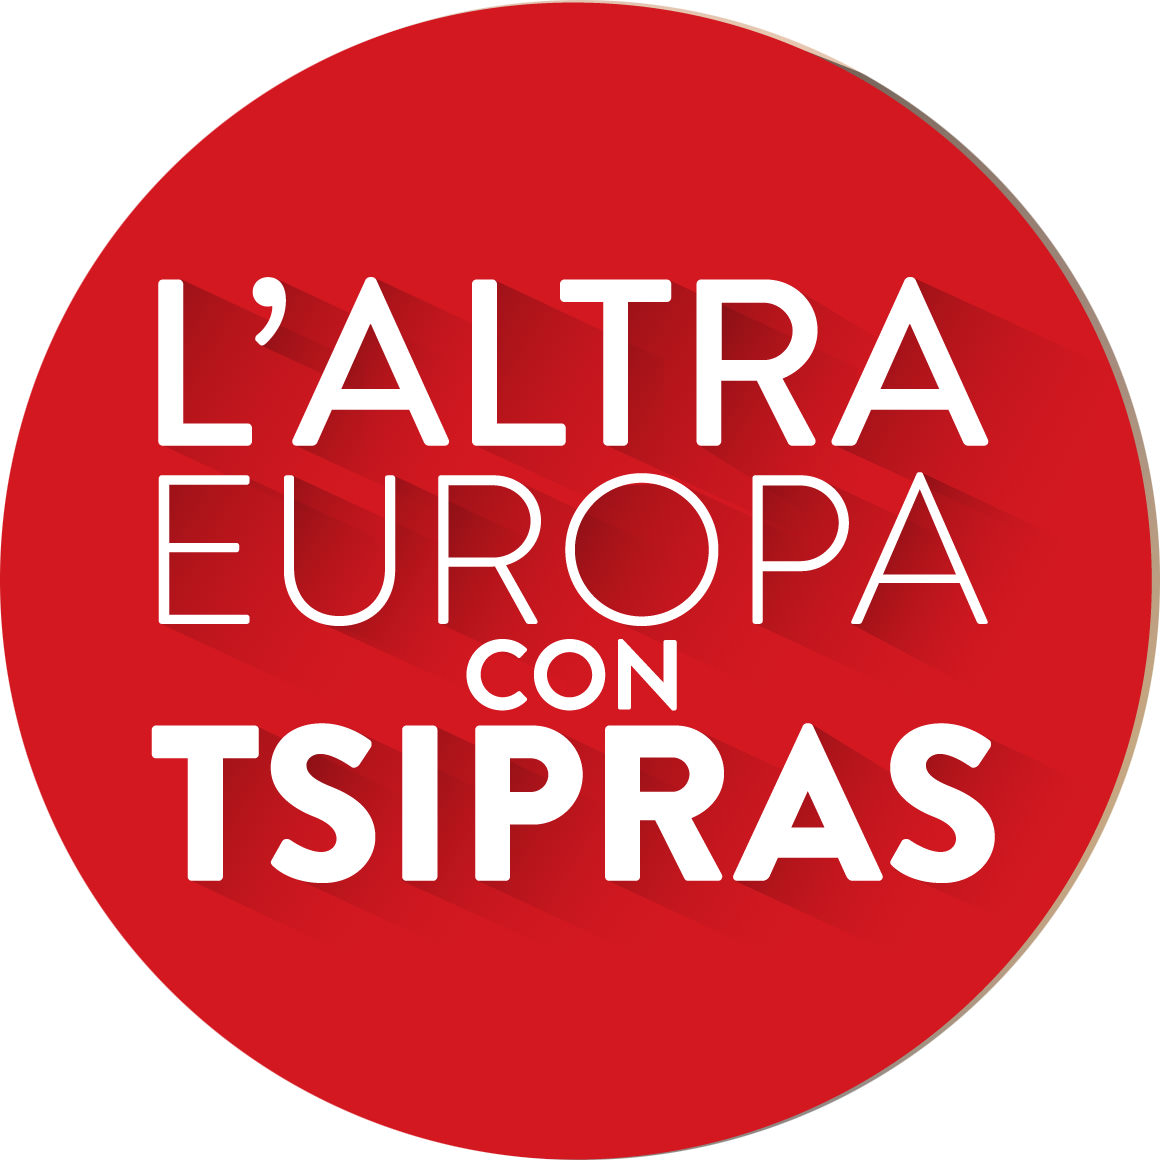 Raccolta firme per “L’altra Europa con Tsipras”, tutti gli appuntamenti in Versilia